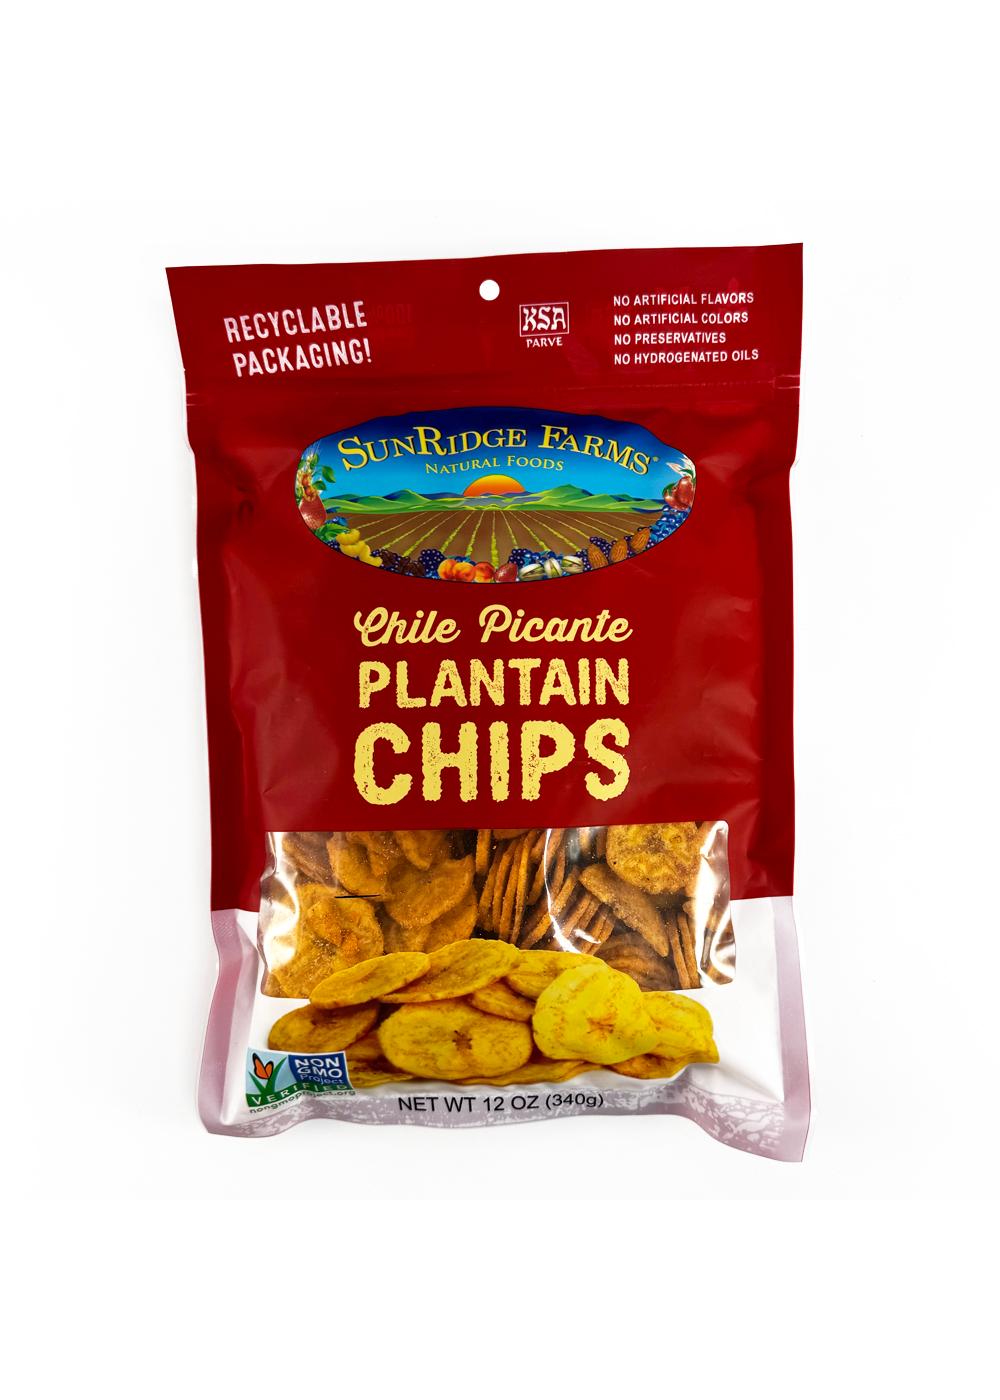 SunRidge Farms Chile Picante Plantain Chips; image 1 of 2